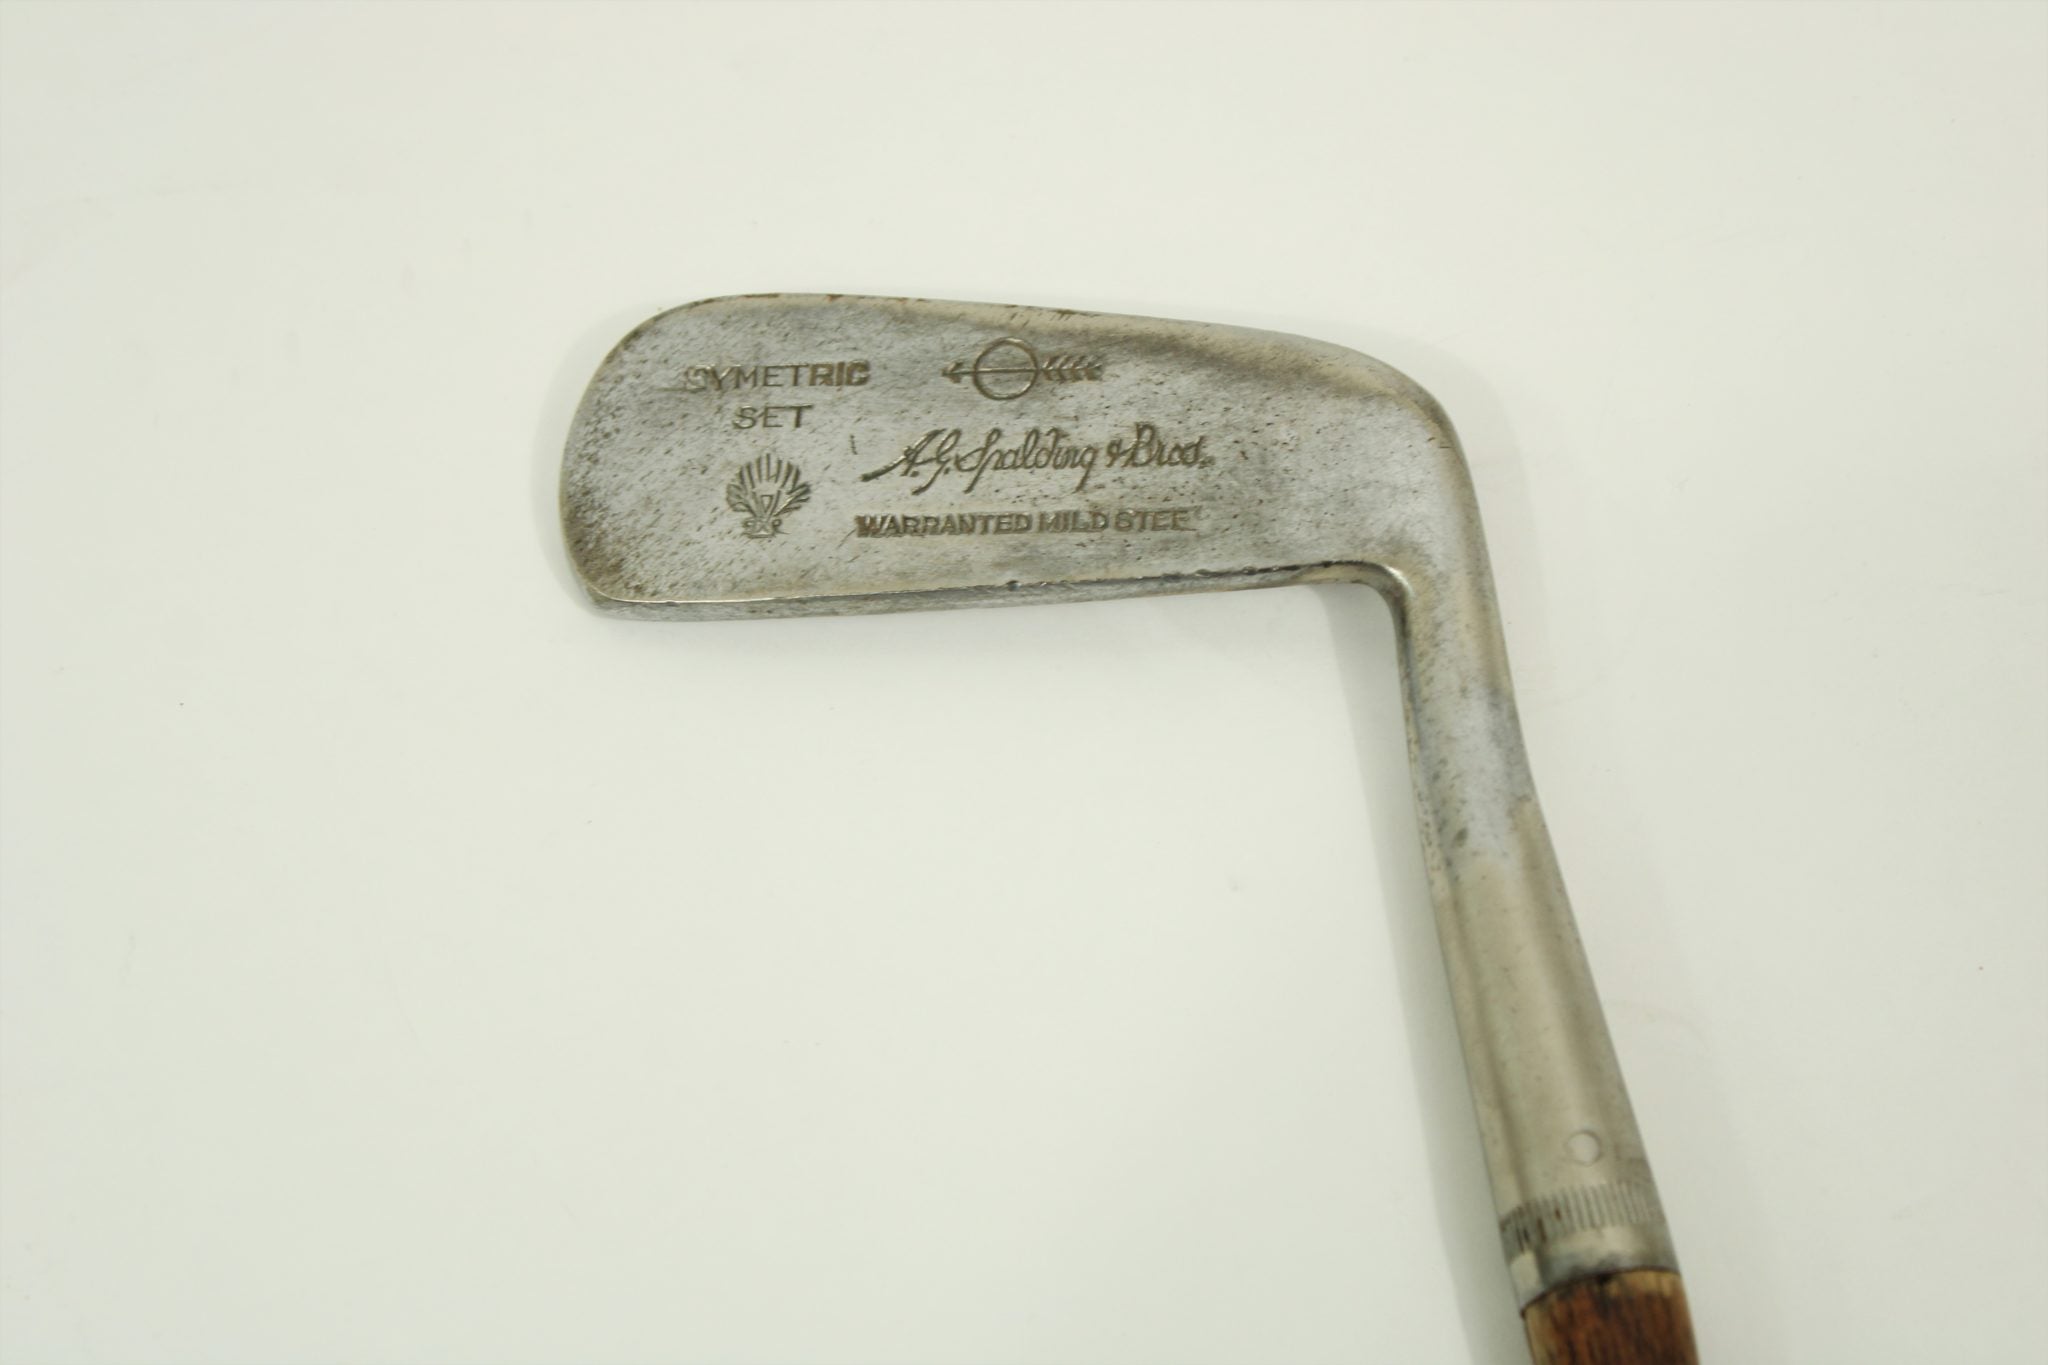 Vintage A.G. Spalding & Bros. Symetric Set Putter Golf Club